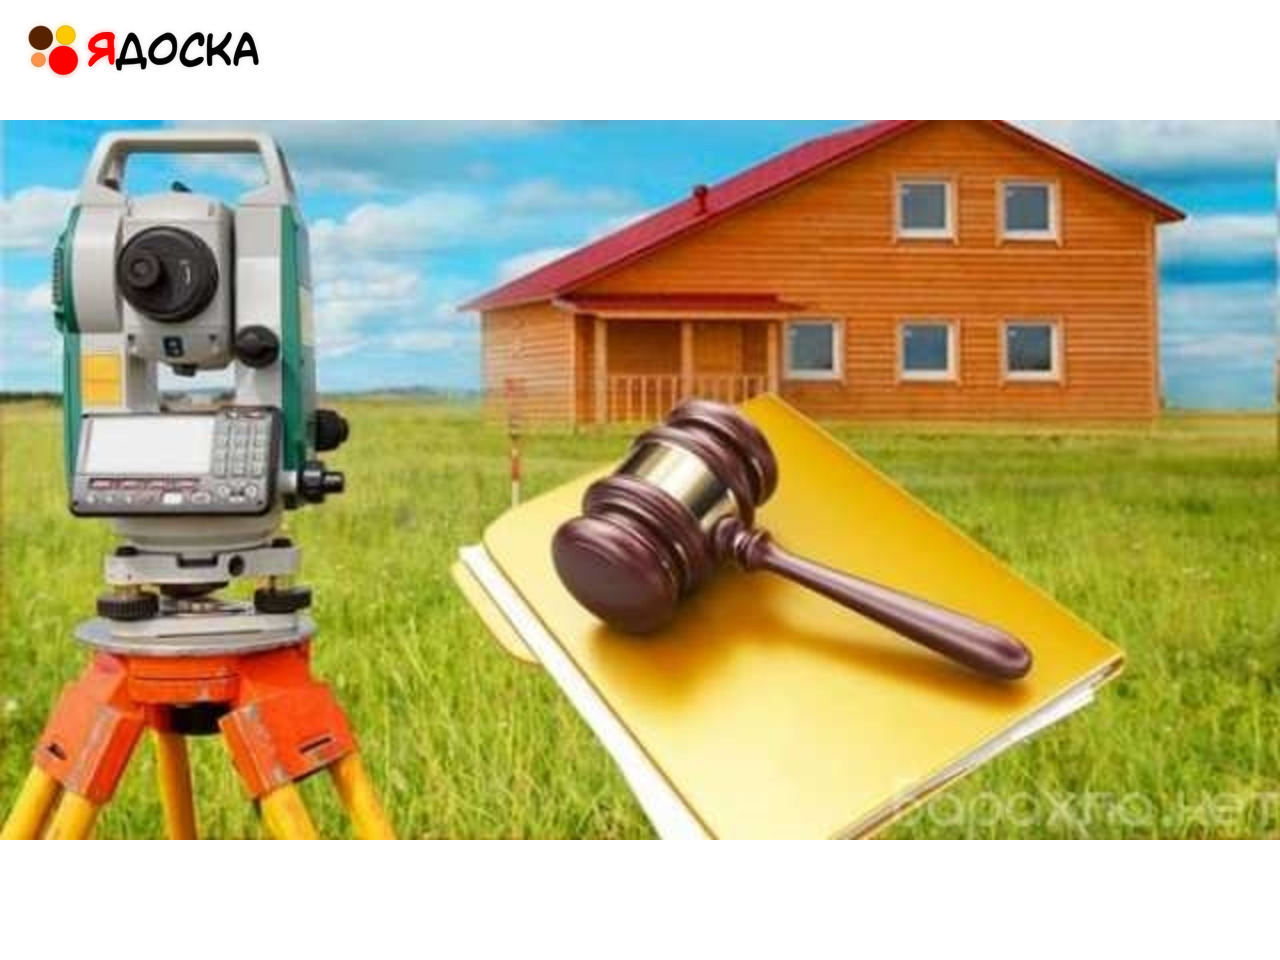 Услуги проведения землеустроительной (земельной) экспертизы в Красноярске - 1